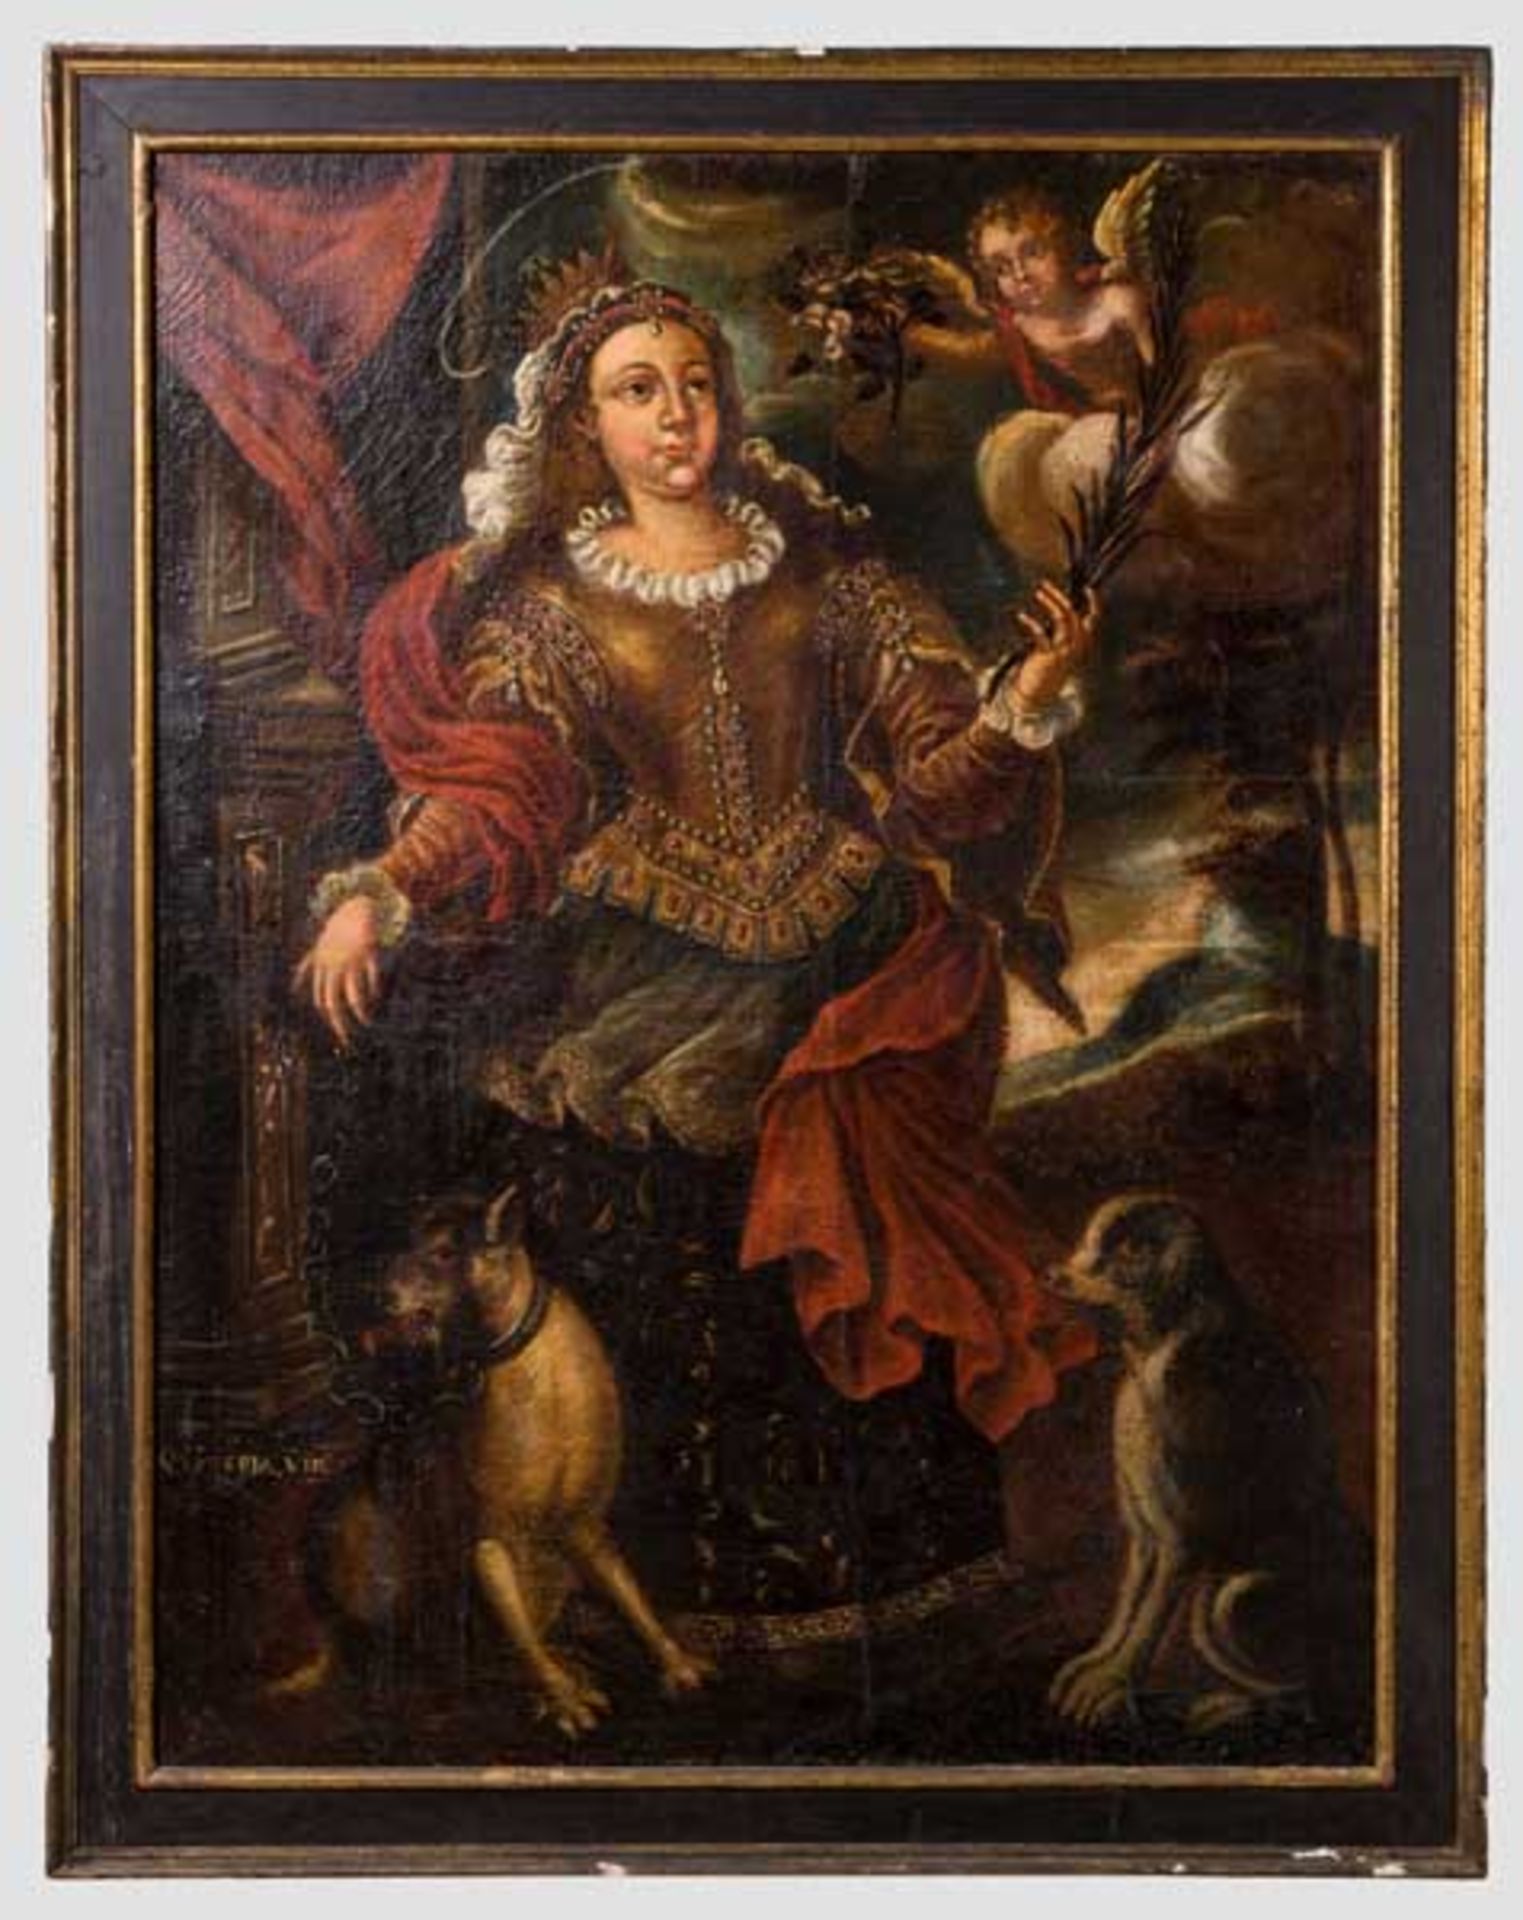 Großes Portrait der Heiligen Eulalia, 18. Jhdt. Öl auf Leinwand. Die Heilige Eulalia ist in